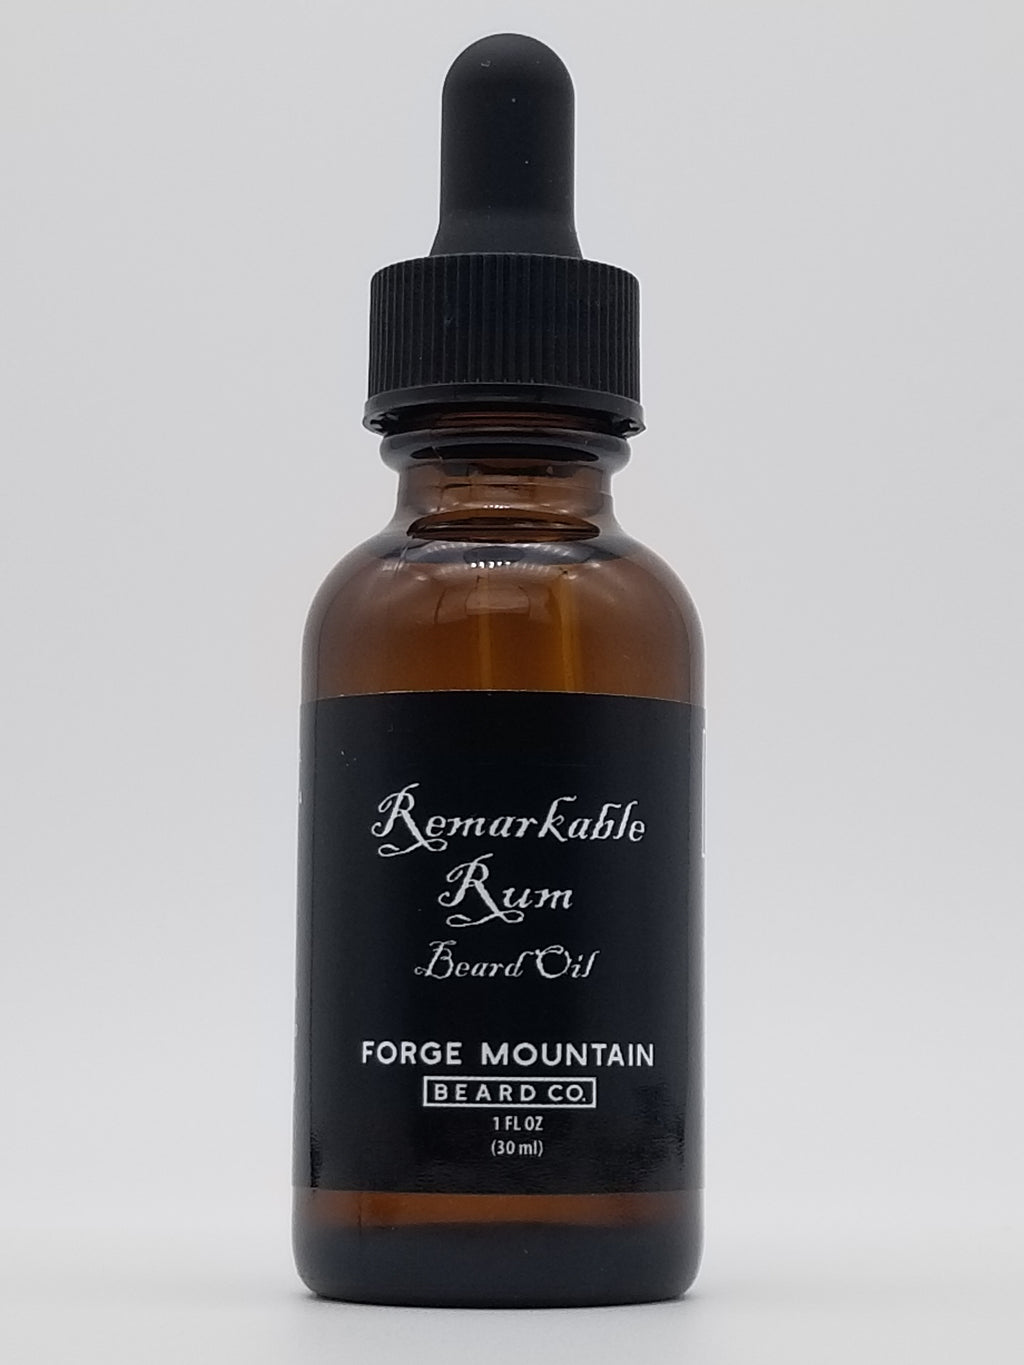 Remarkable Rum Beard Oil